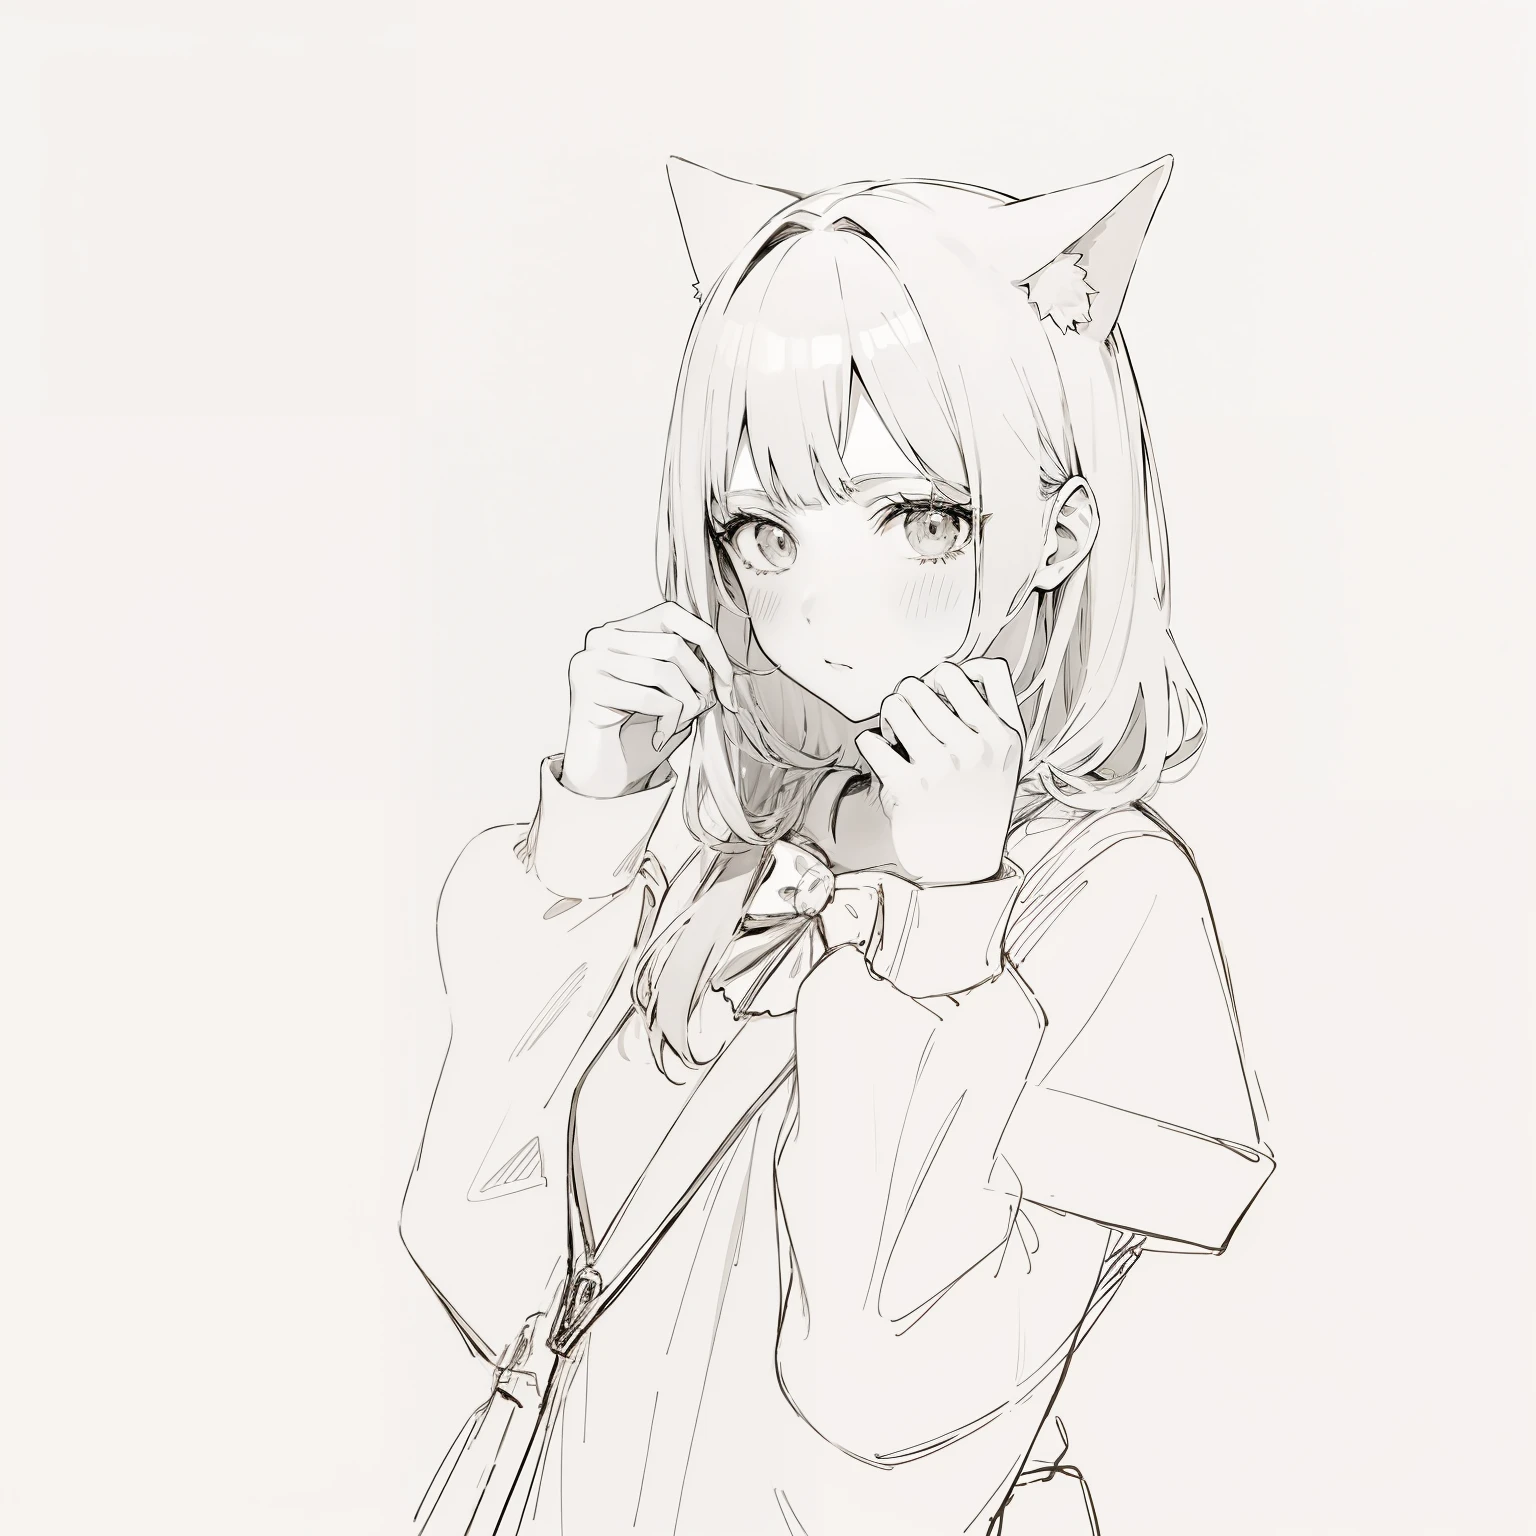 Anime-Serie, Anime-Serie cat girl, cute Anime-Serie girl, Farbe, gute Qualität